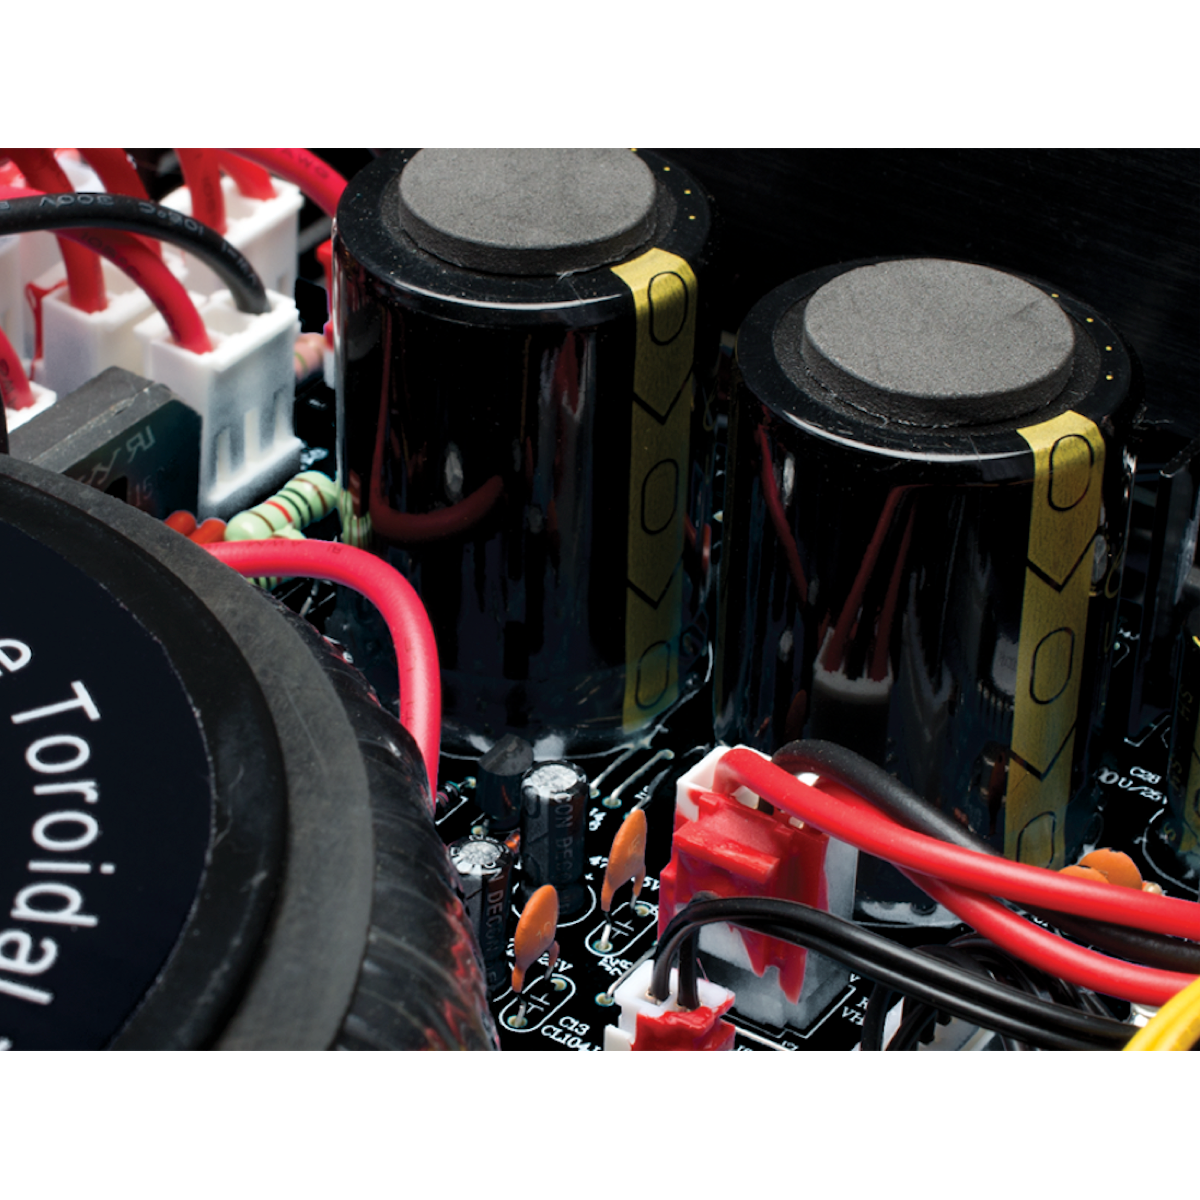 Emotiva A-100 - Stereo Amplifier - AVStore